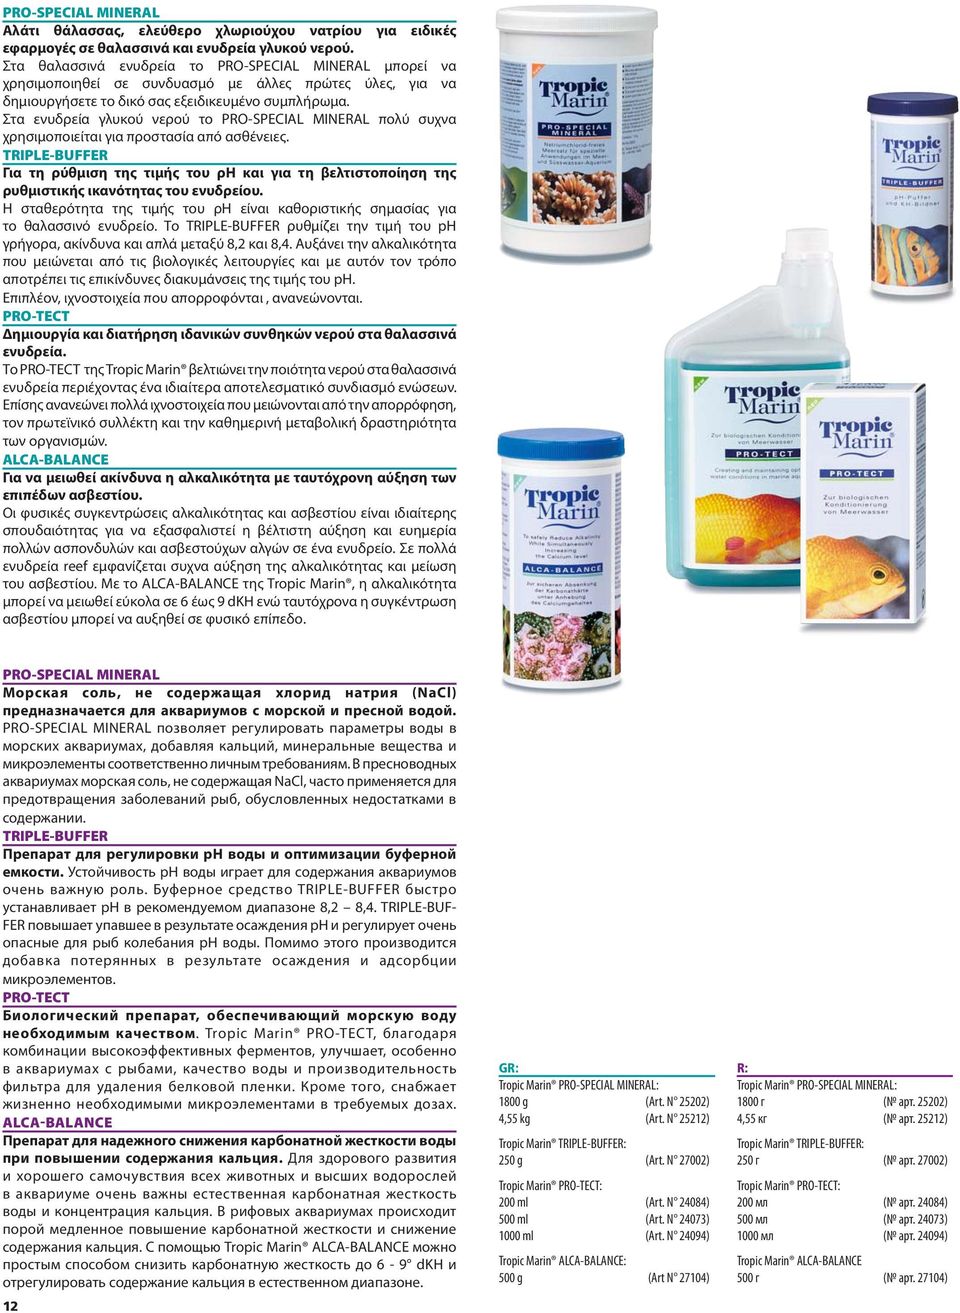 Στα ενυδρεία γλυκού νερού το PRO-SPECIAL MINERAL πολύ συχνα χρησιμοποιείται για προστασία από ασθένειες.